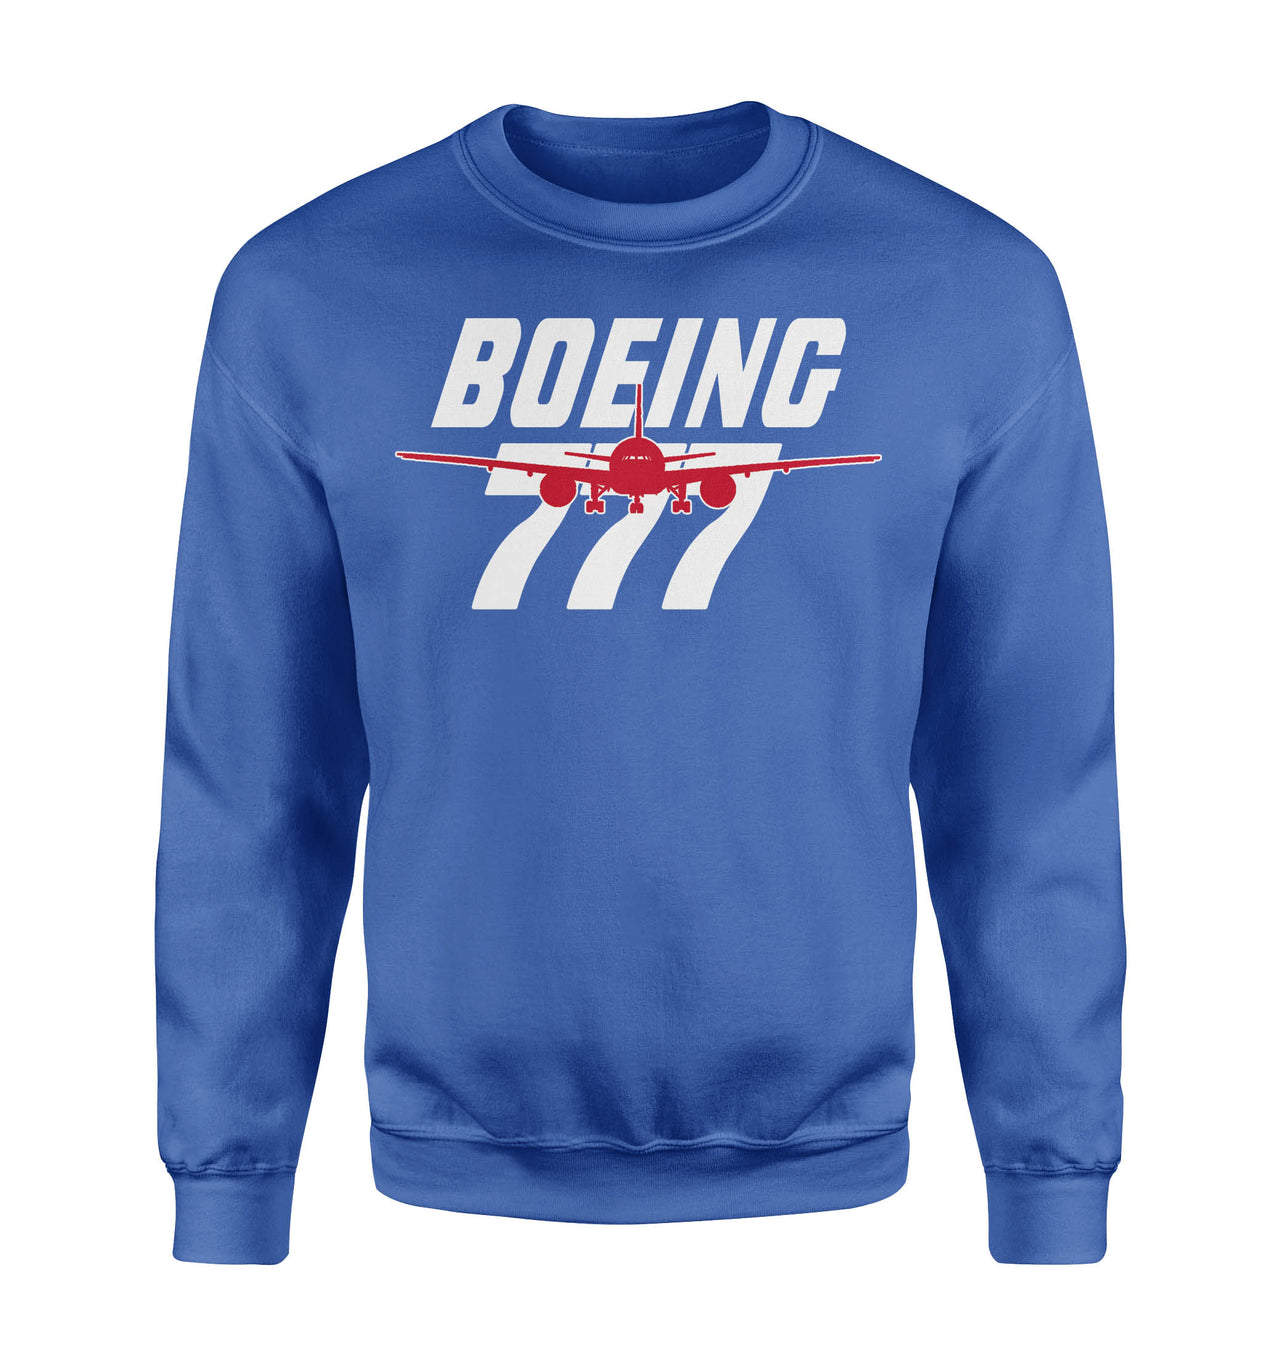 Amazing Boeing 777 Designed Sweatshirts